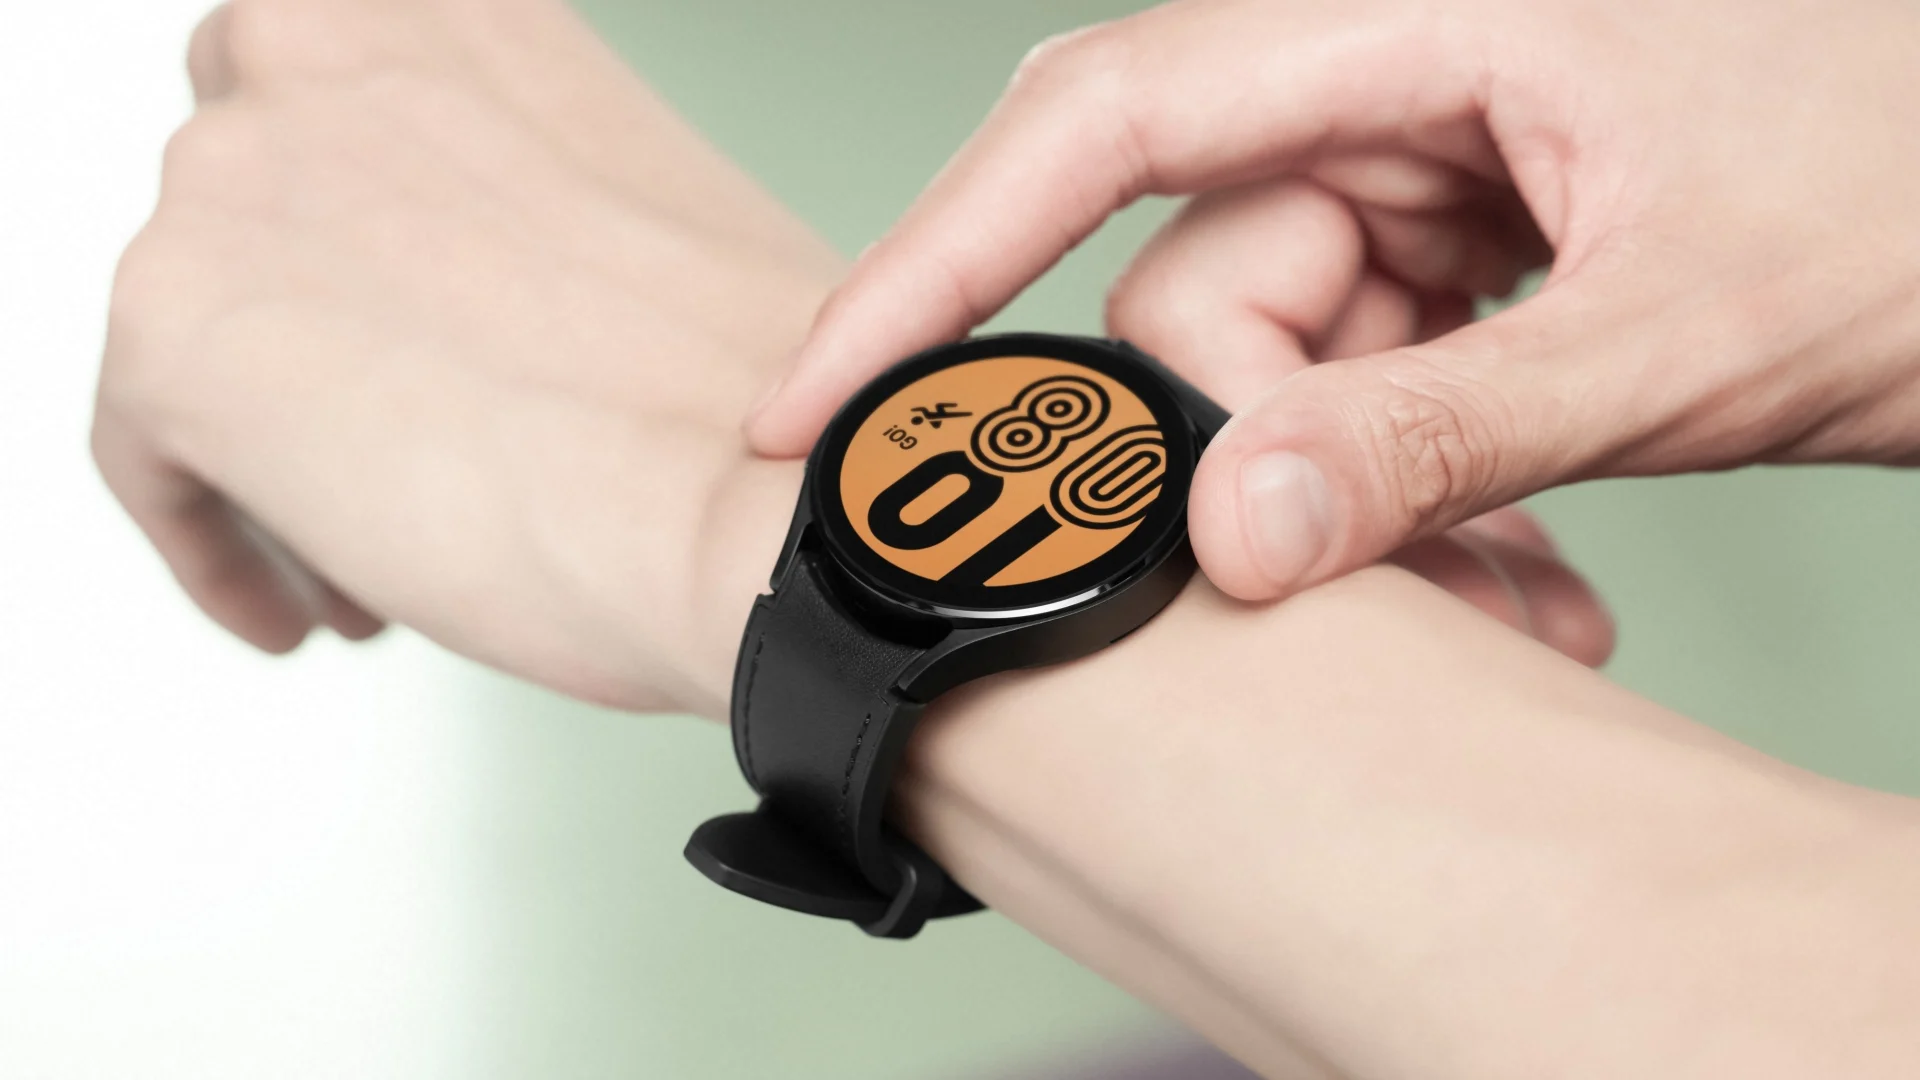 Với Galaxy Watch4 và hai tính năng đo huyết áp và điện tâm đồ, việc chăm sóc sức khỏe trở nên dễ dàng hơn bao giờ hết. Thiết bị này giúp bạn theo dõi tình trạng sức khỏe của mình, giữ cho cơ thể luôn khỏe mạnh và sẵn sàng cho mọi thử thách. Hãy cùng trải nghiệm và khám phá một chiếc đồng hồ thông minh đầy tính năng và tiện ích, giúp bạn sống khỏe hơn và hiệu quả hơn trong công việc cũng như cuộc sống hàng ngày.